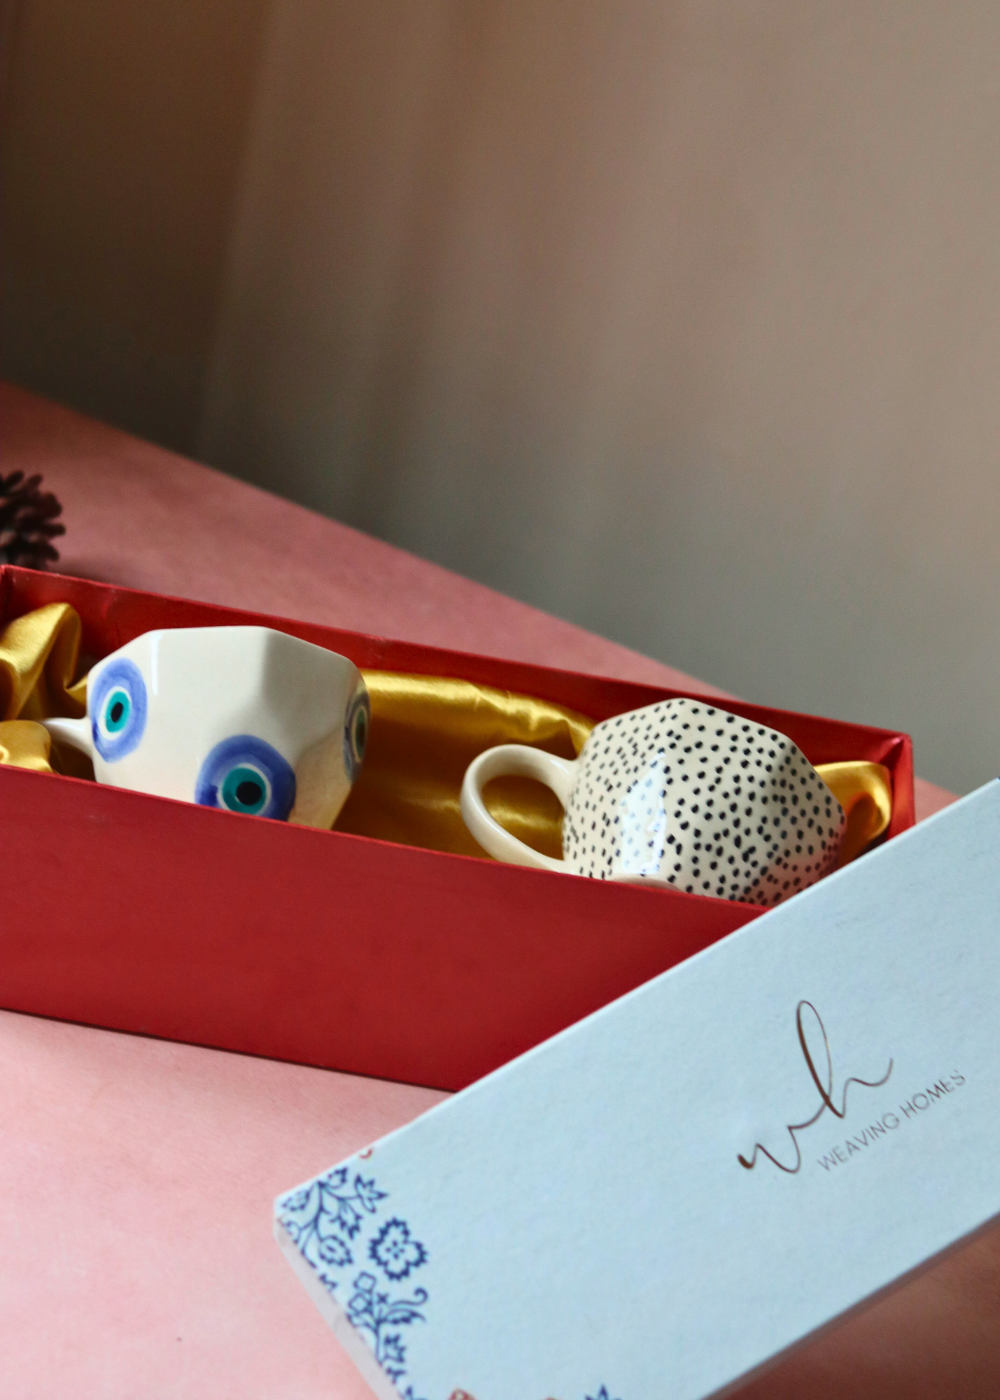 Coffee mug in a gift box